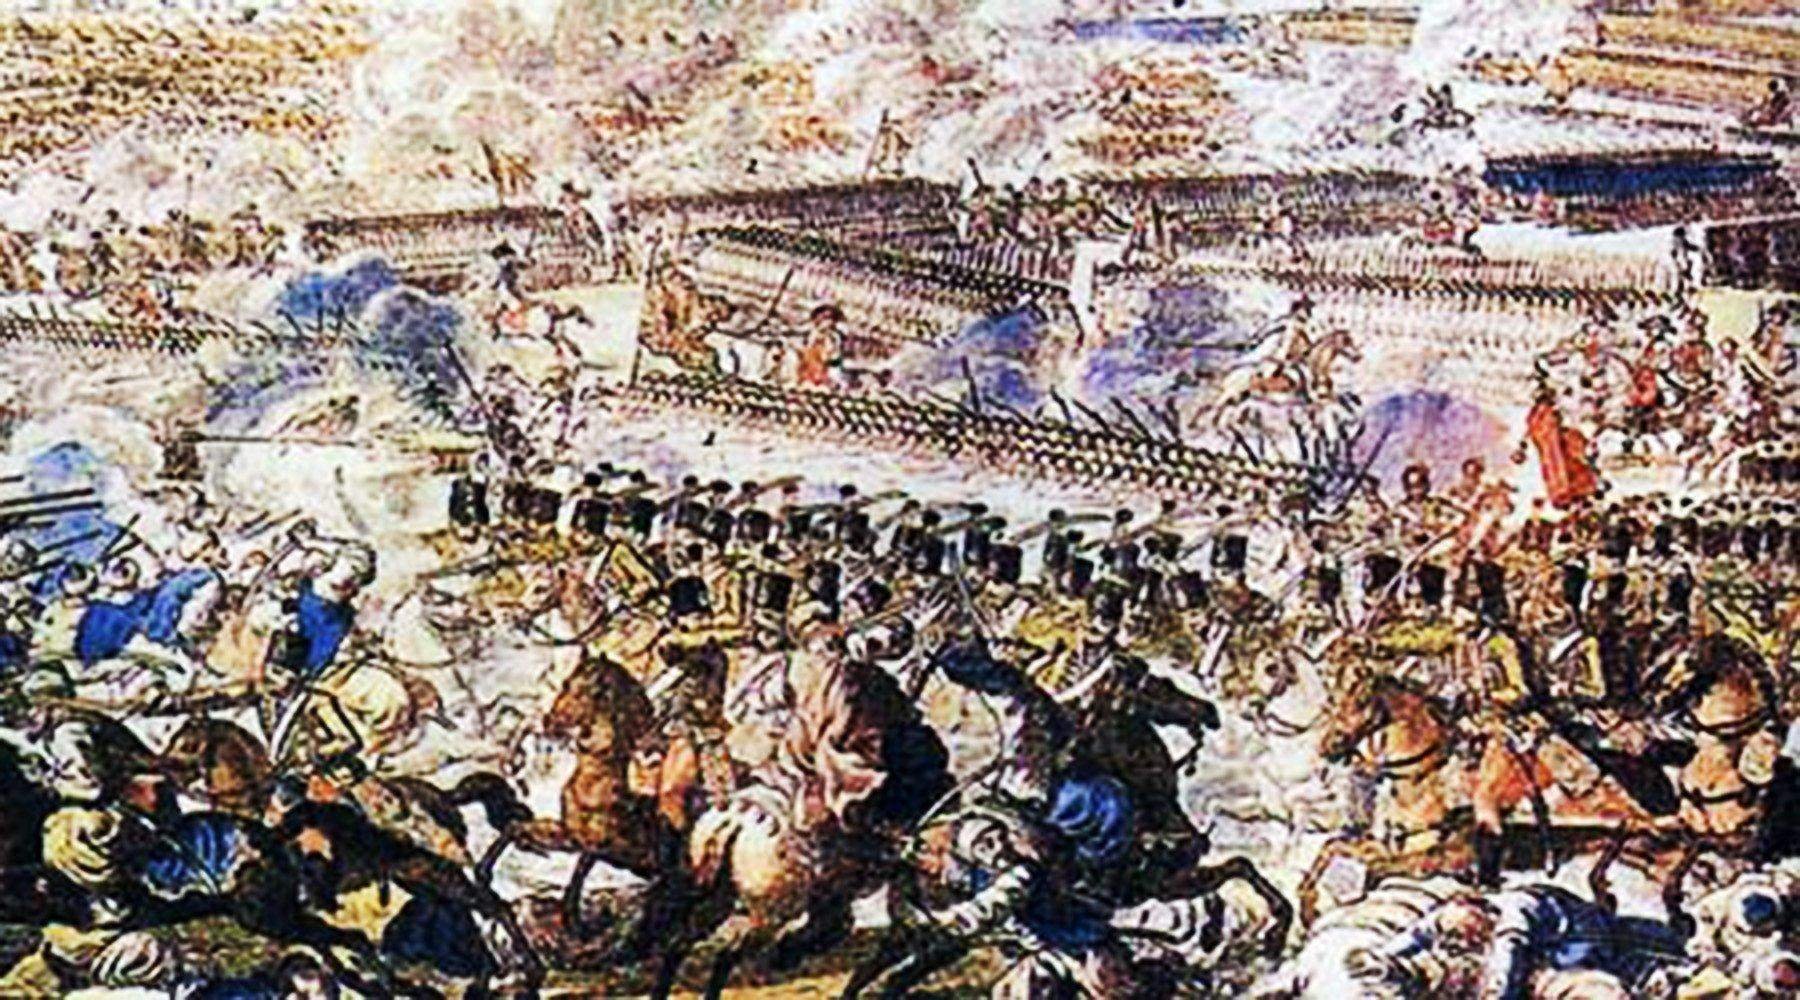 Сражение при рымнике год. Битва у реки Рымник Суворов. Битва при реке Рымник 1789 год.